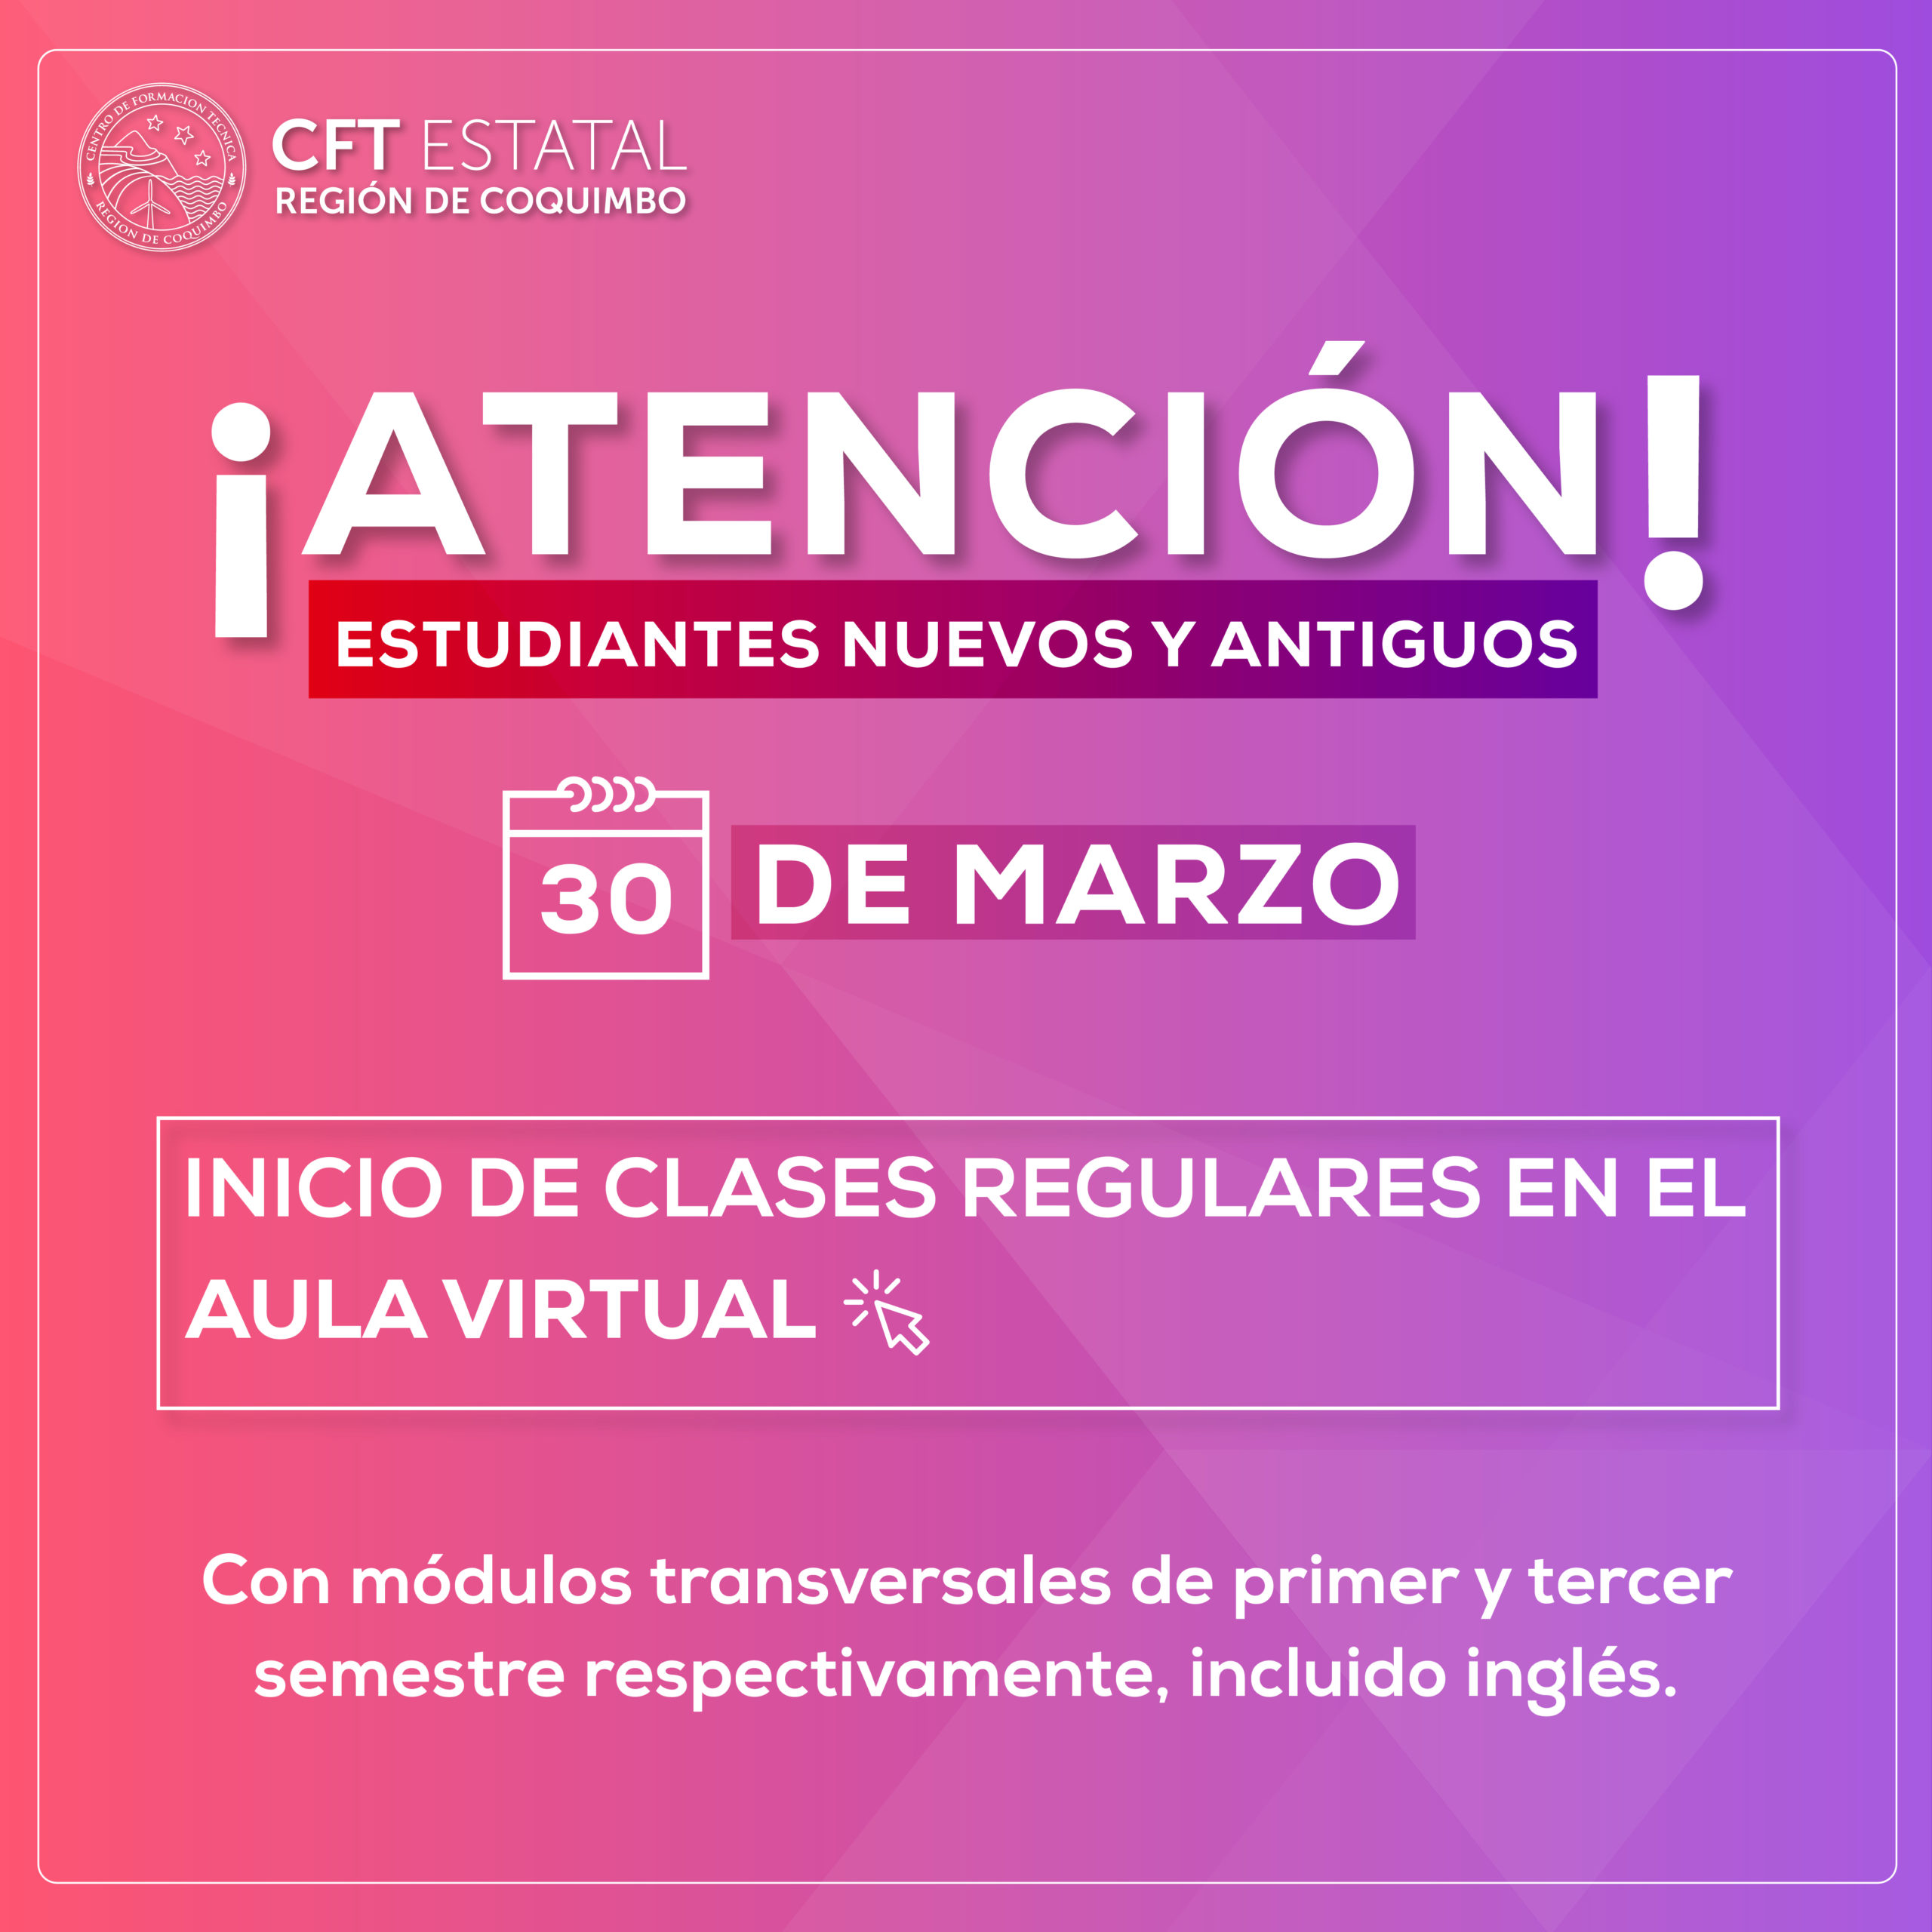 Desde hoy comienzan las clases regulares a través del Aula Virtual en el CFT Región de Coquimbo